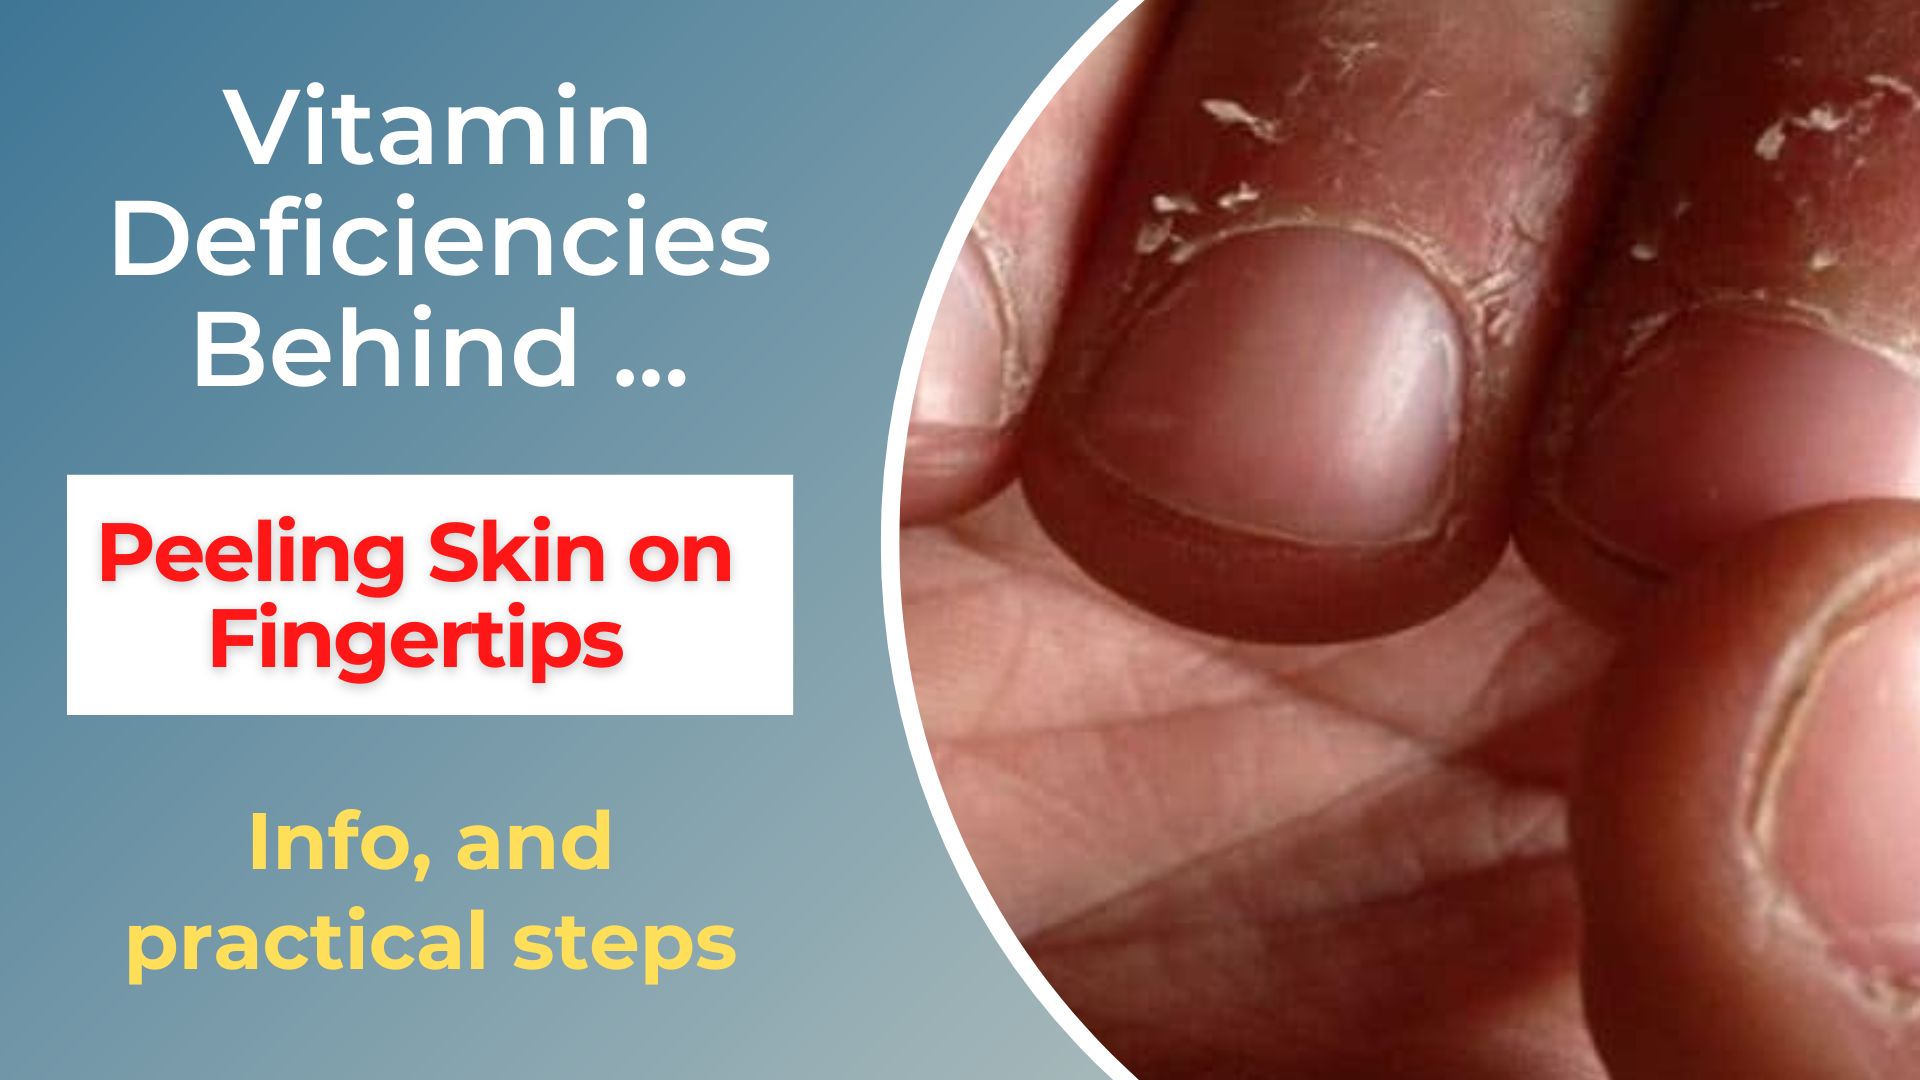 peeling skin on fingertips vitamin deficiency